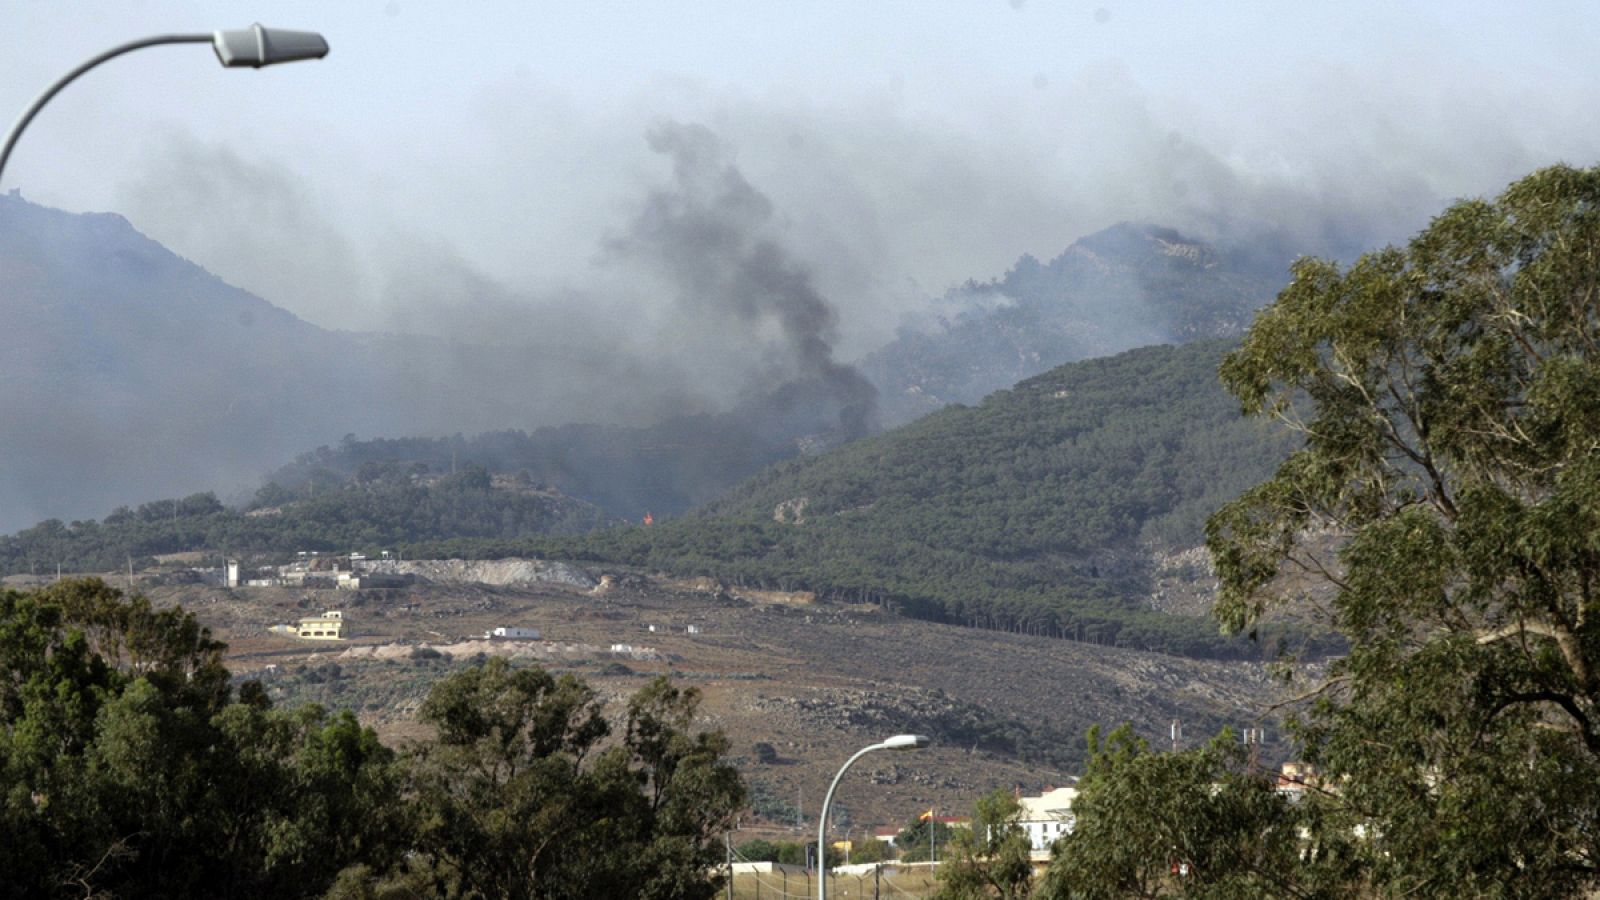 Incendio del monte Gurugú en Marruecos, que ha quemado 352 hectáeras